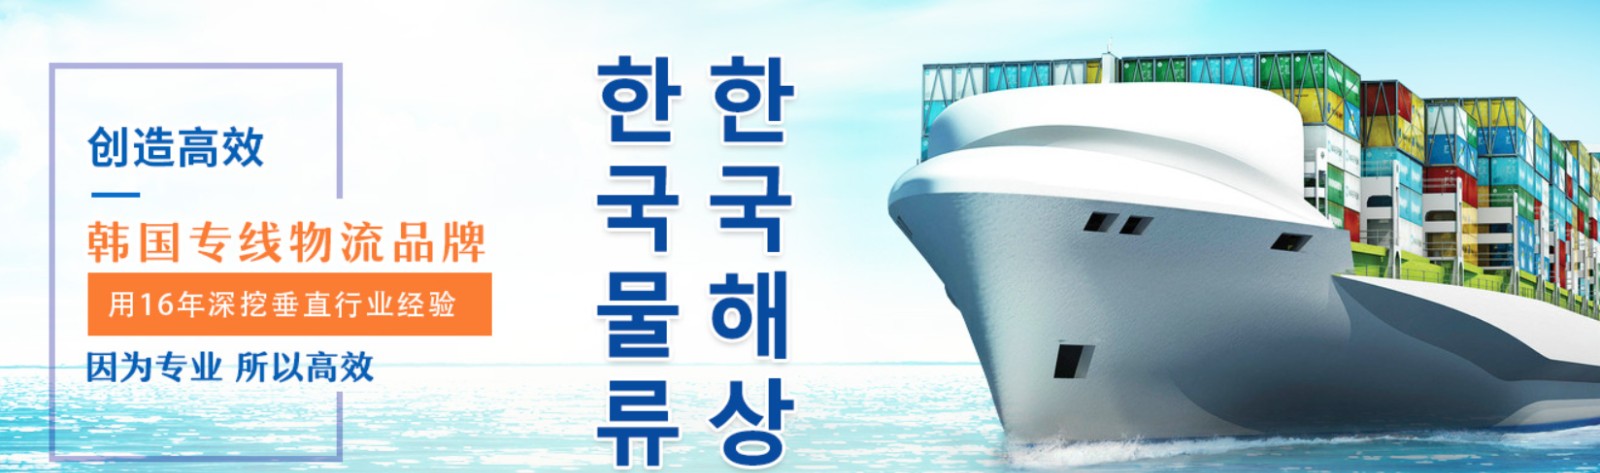 韩国海运专线 韩国空运价格 韩国快递查询 韩国海空铁多式联运国际货运代理